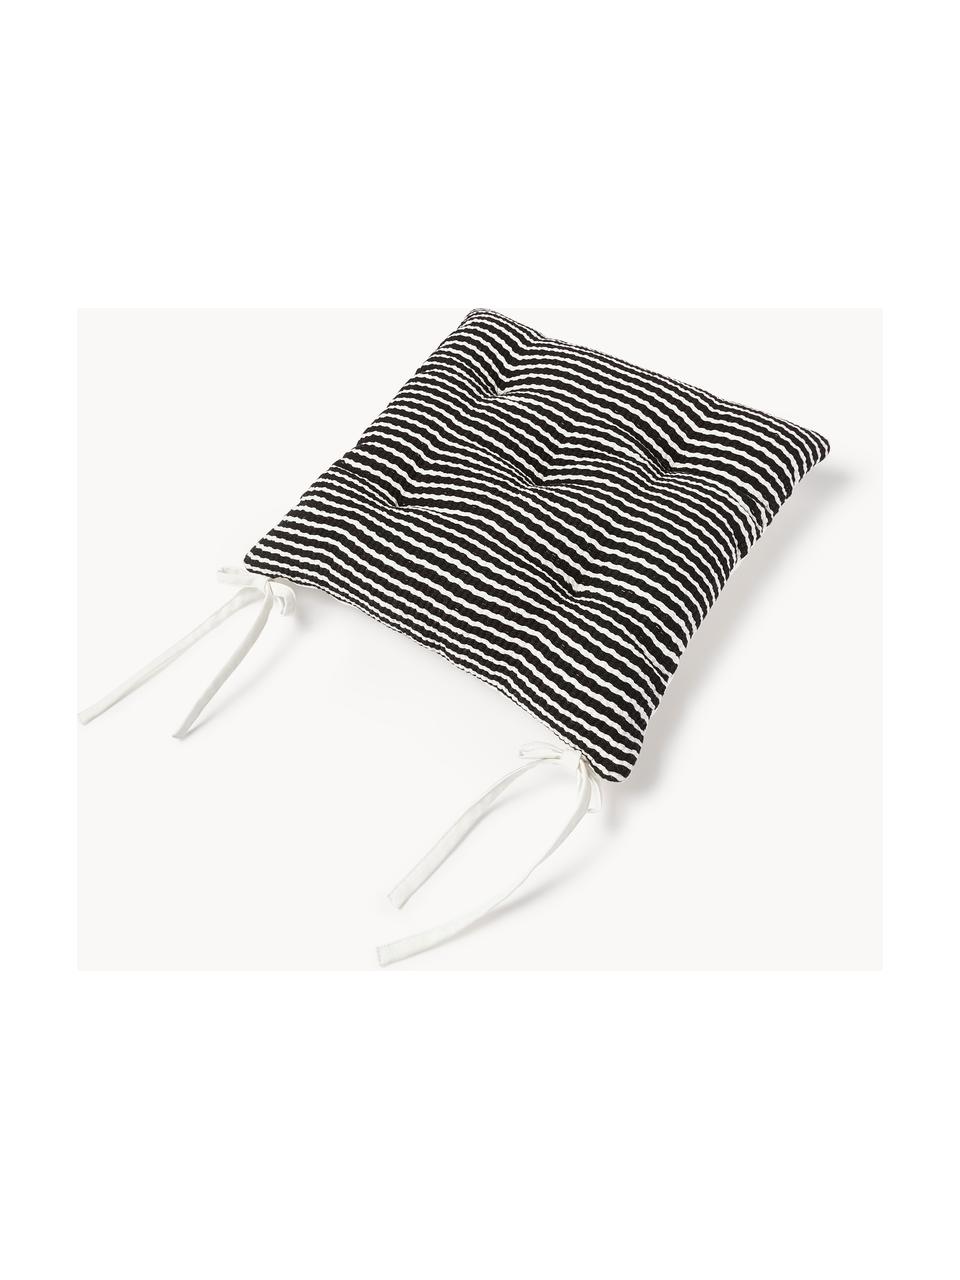 Coussins d'assise en coton rayé Silia, 2 pièces, Noir, blanc, larg. 40 x long. 40 cm